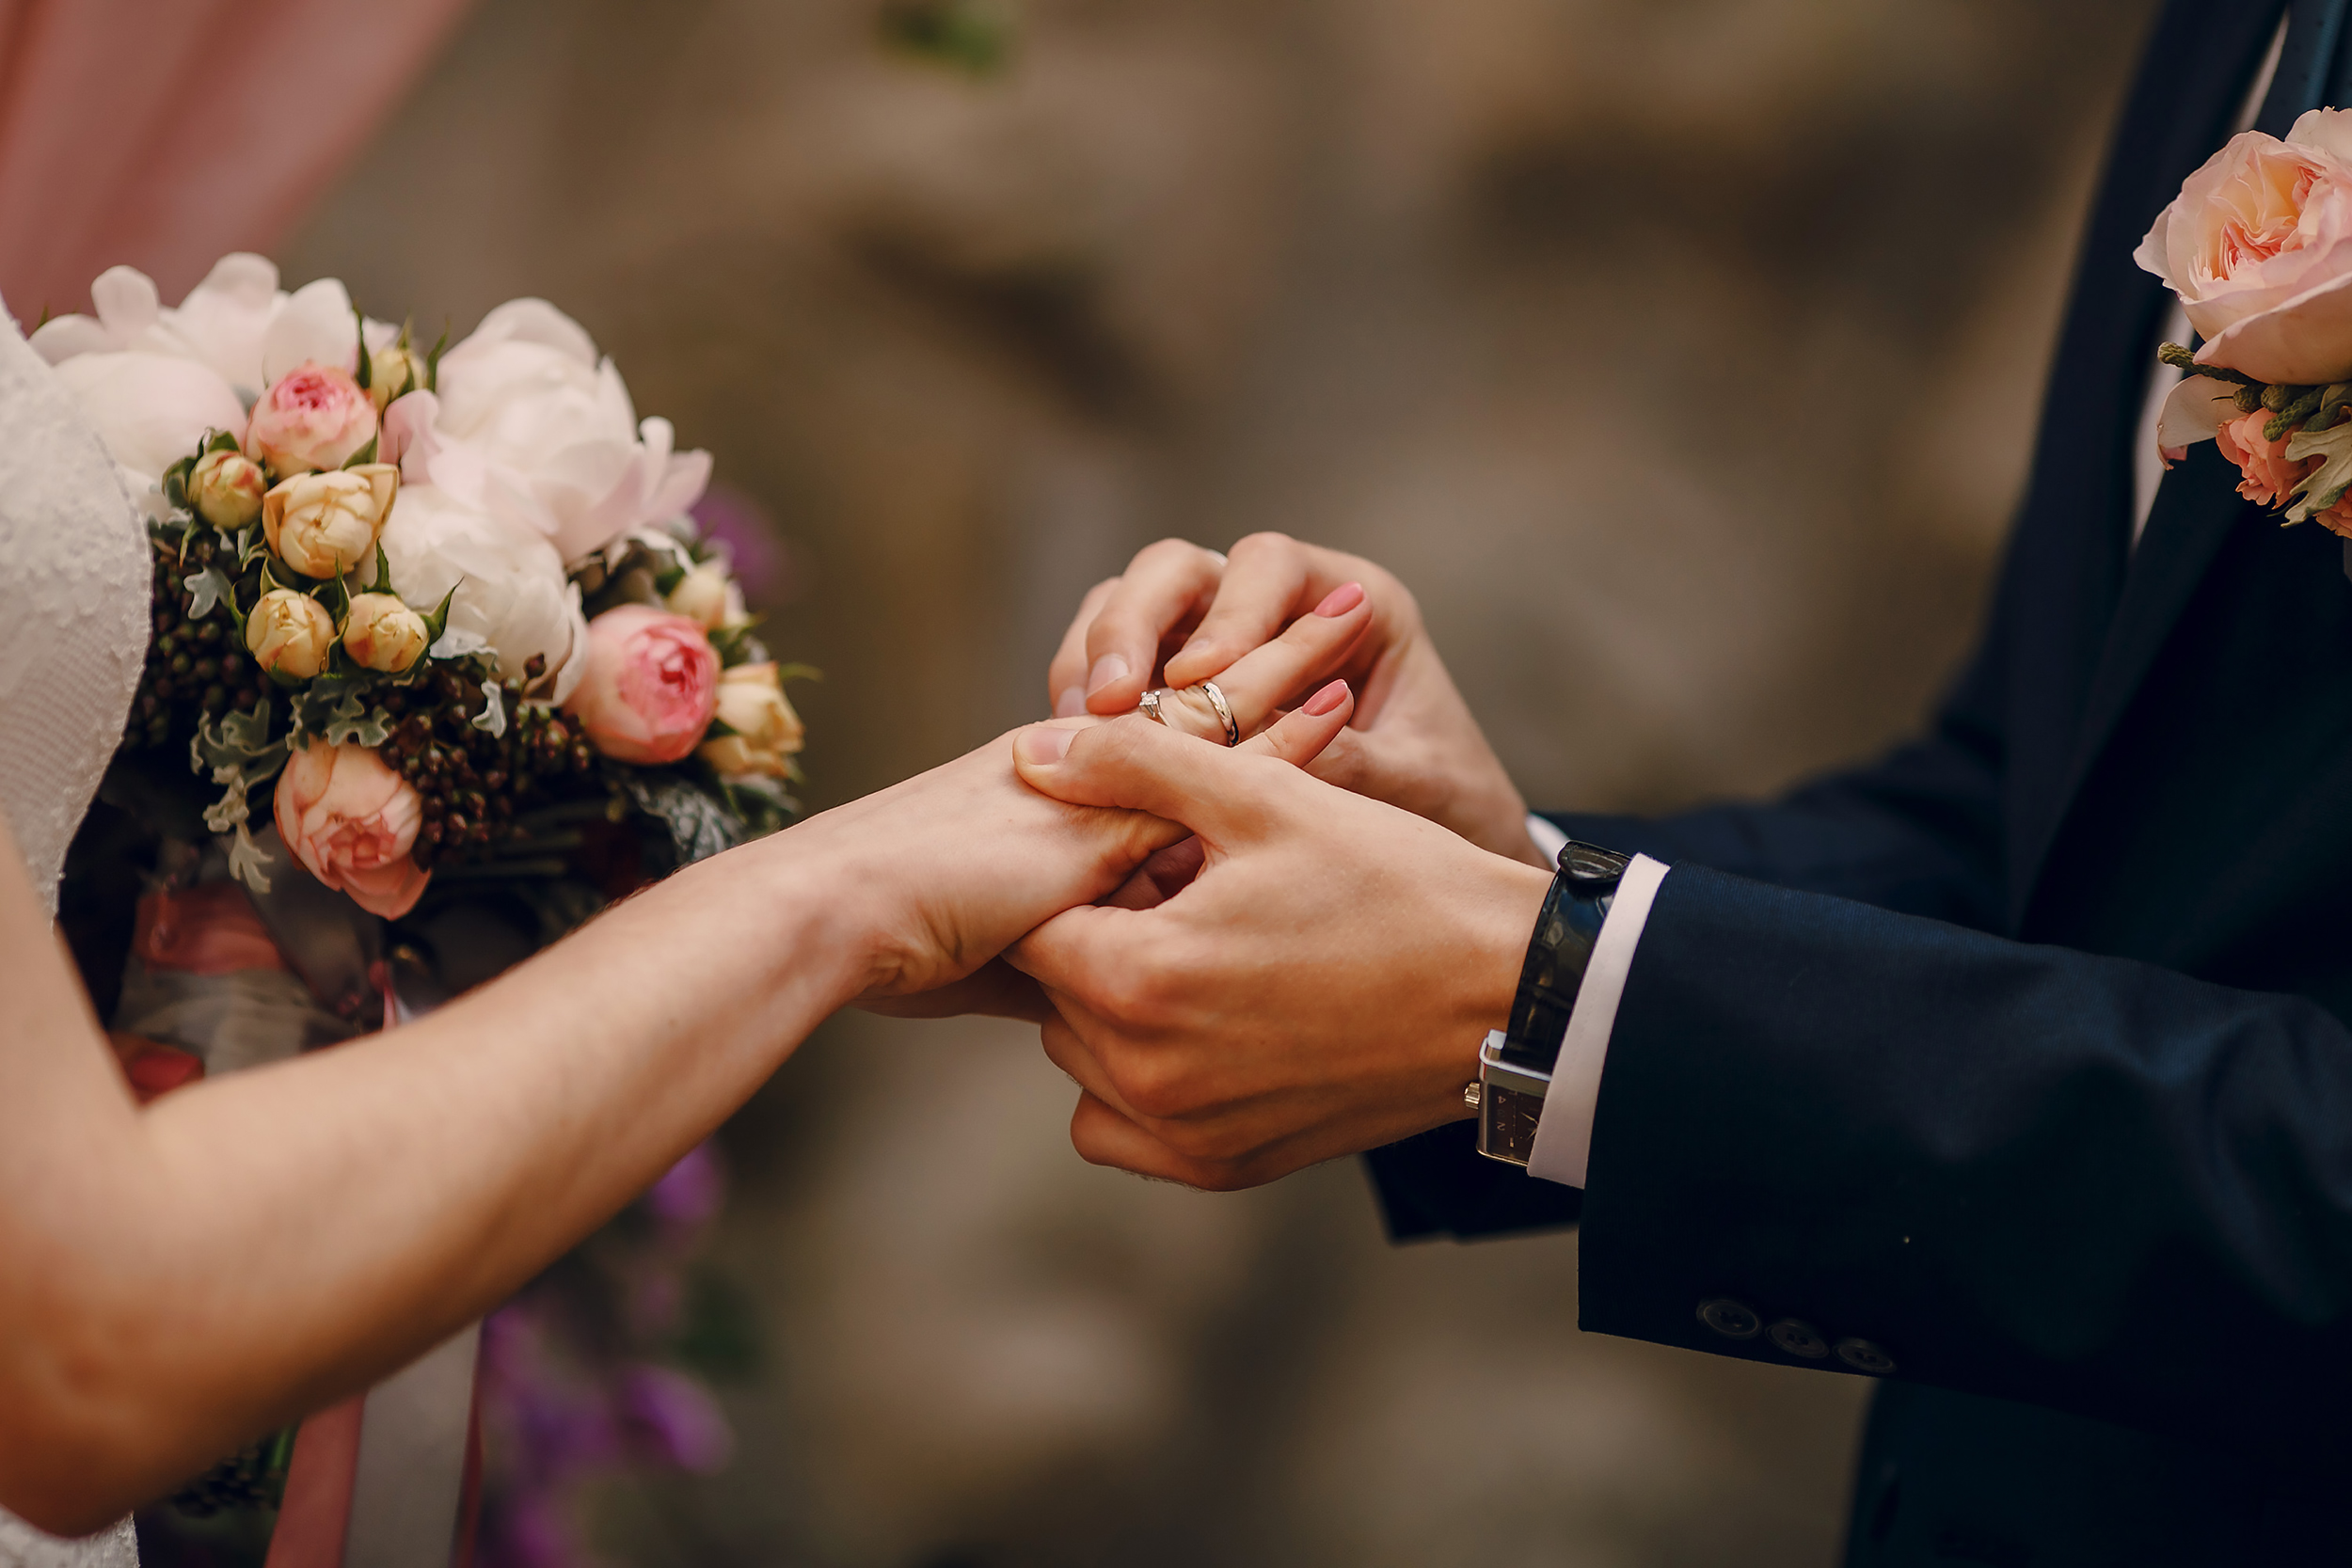 Região de Araçatuba registra mais de 1,4 mil casamentos nos primeiros cinco meses do ano; Mirandópolis teve 42 matrimônios